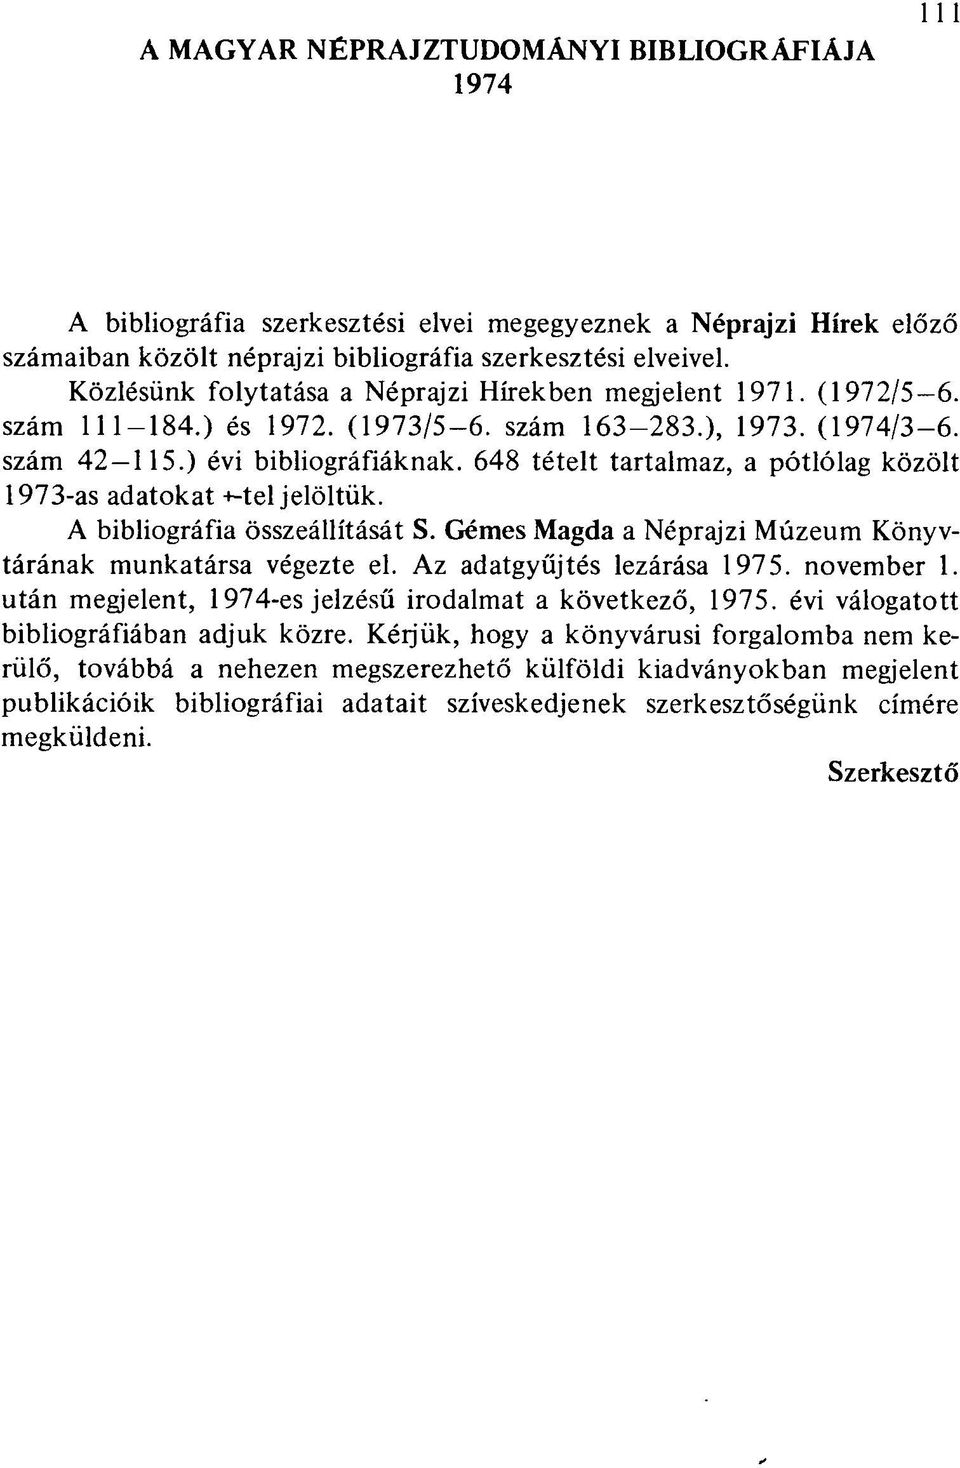 648 tételt tartalmaz, a pótlólag közölt 1973-as adatokat +-tel jelöltük. A bibliográfia összeállítását S. Gémes Magda a Néprajzi Múzeum Könyvtárának munkatársa végezte el.